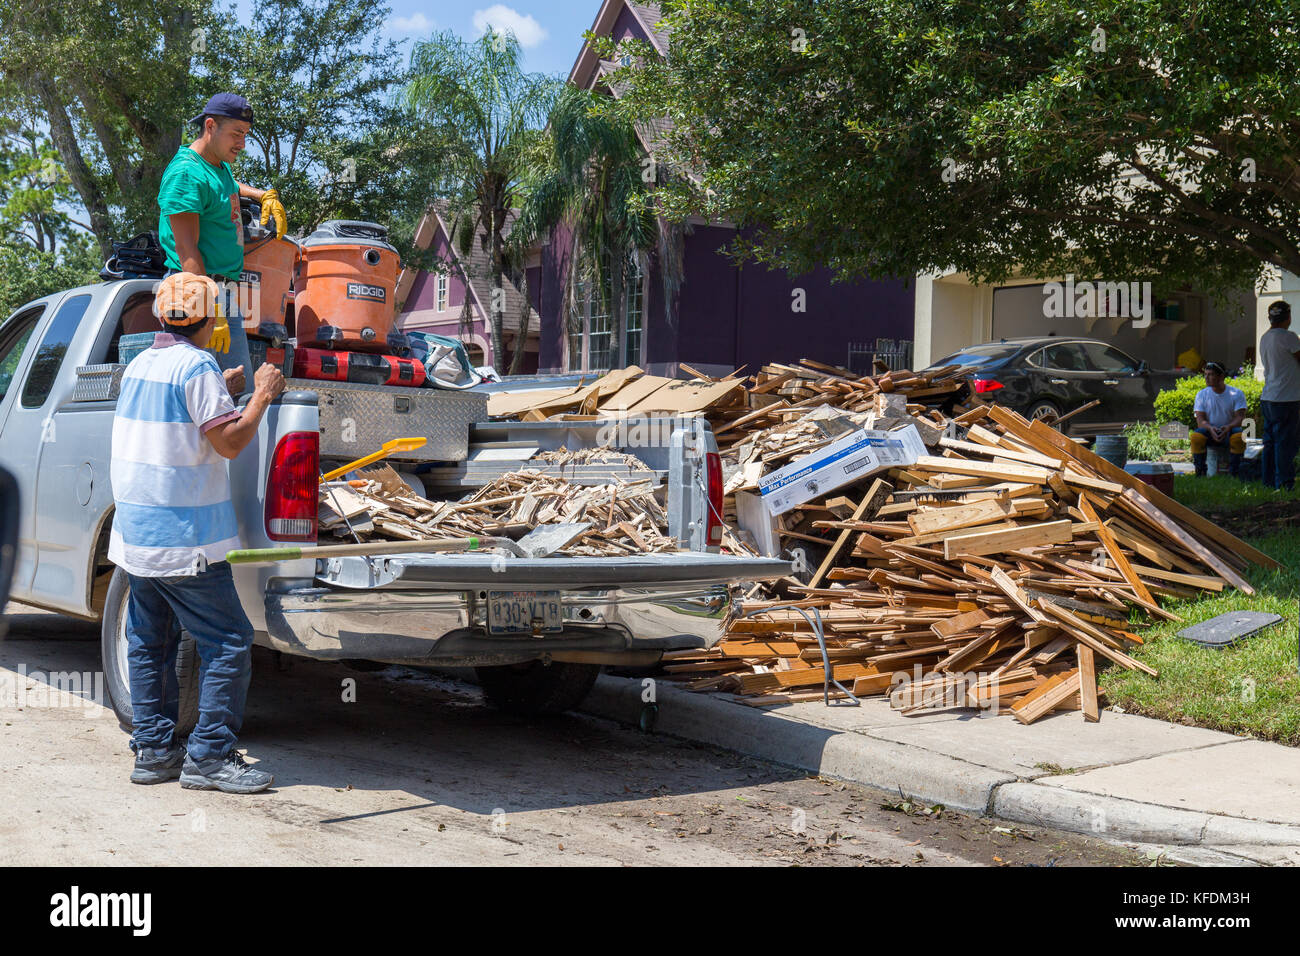 Le nettoyage commence à Houston après l'ouragan Harvey et de fortes inondations. Les entreprises locales aide les résidents de leurs efforts de nettoyage Banque D'Images